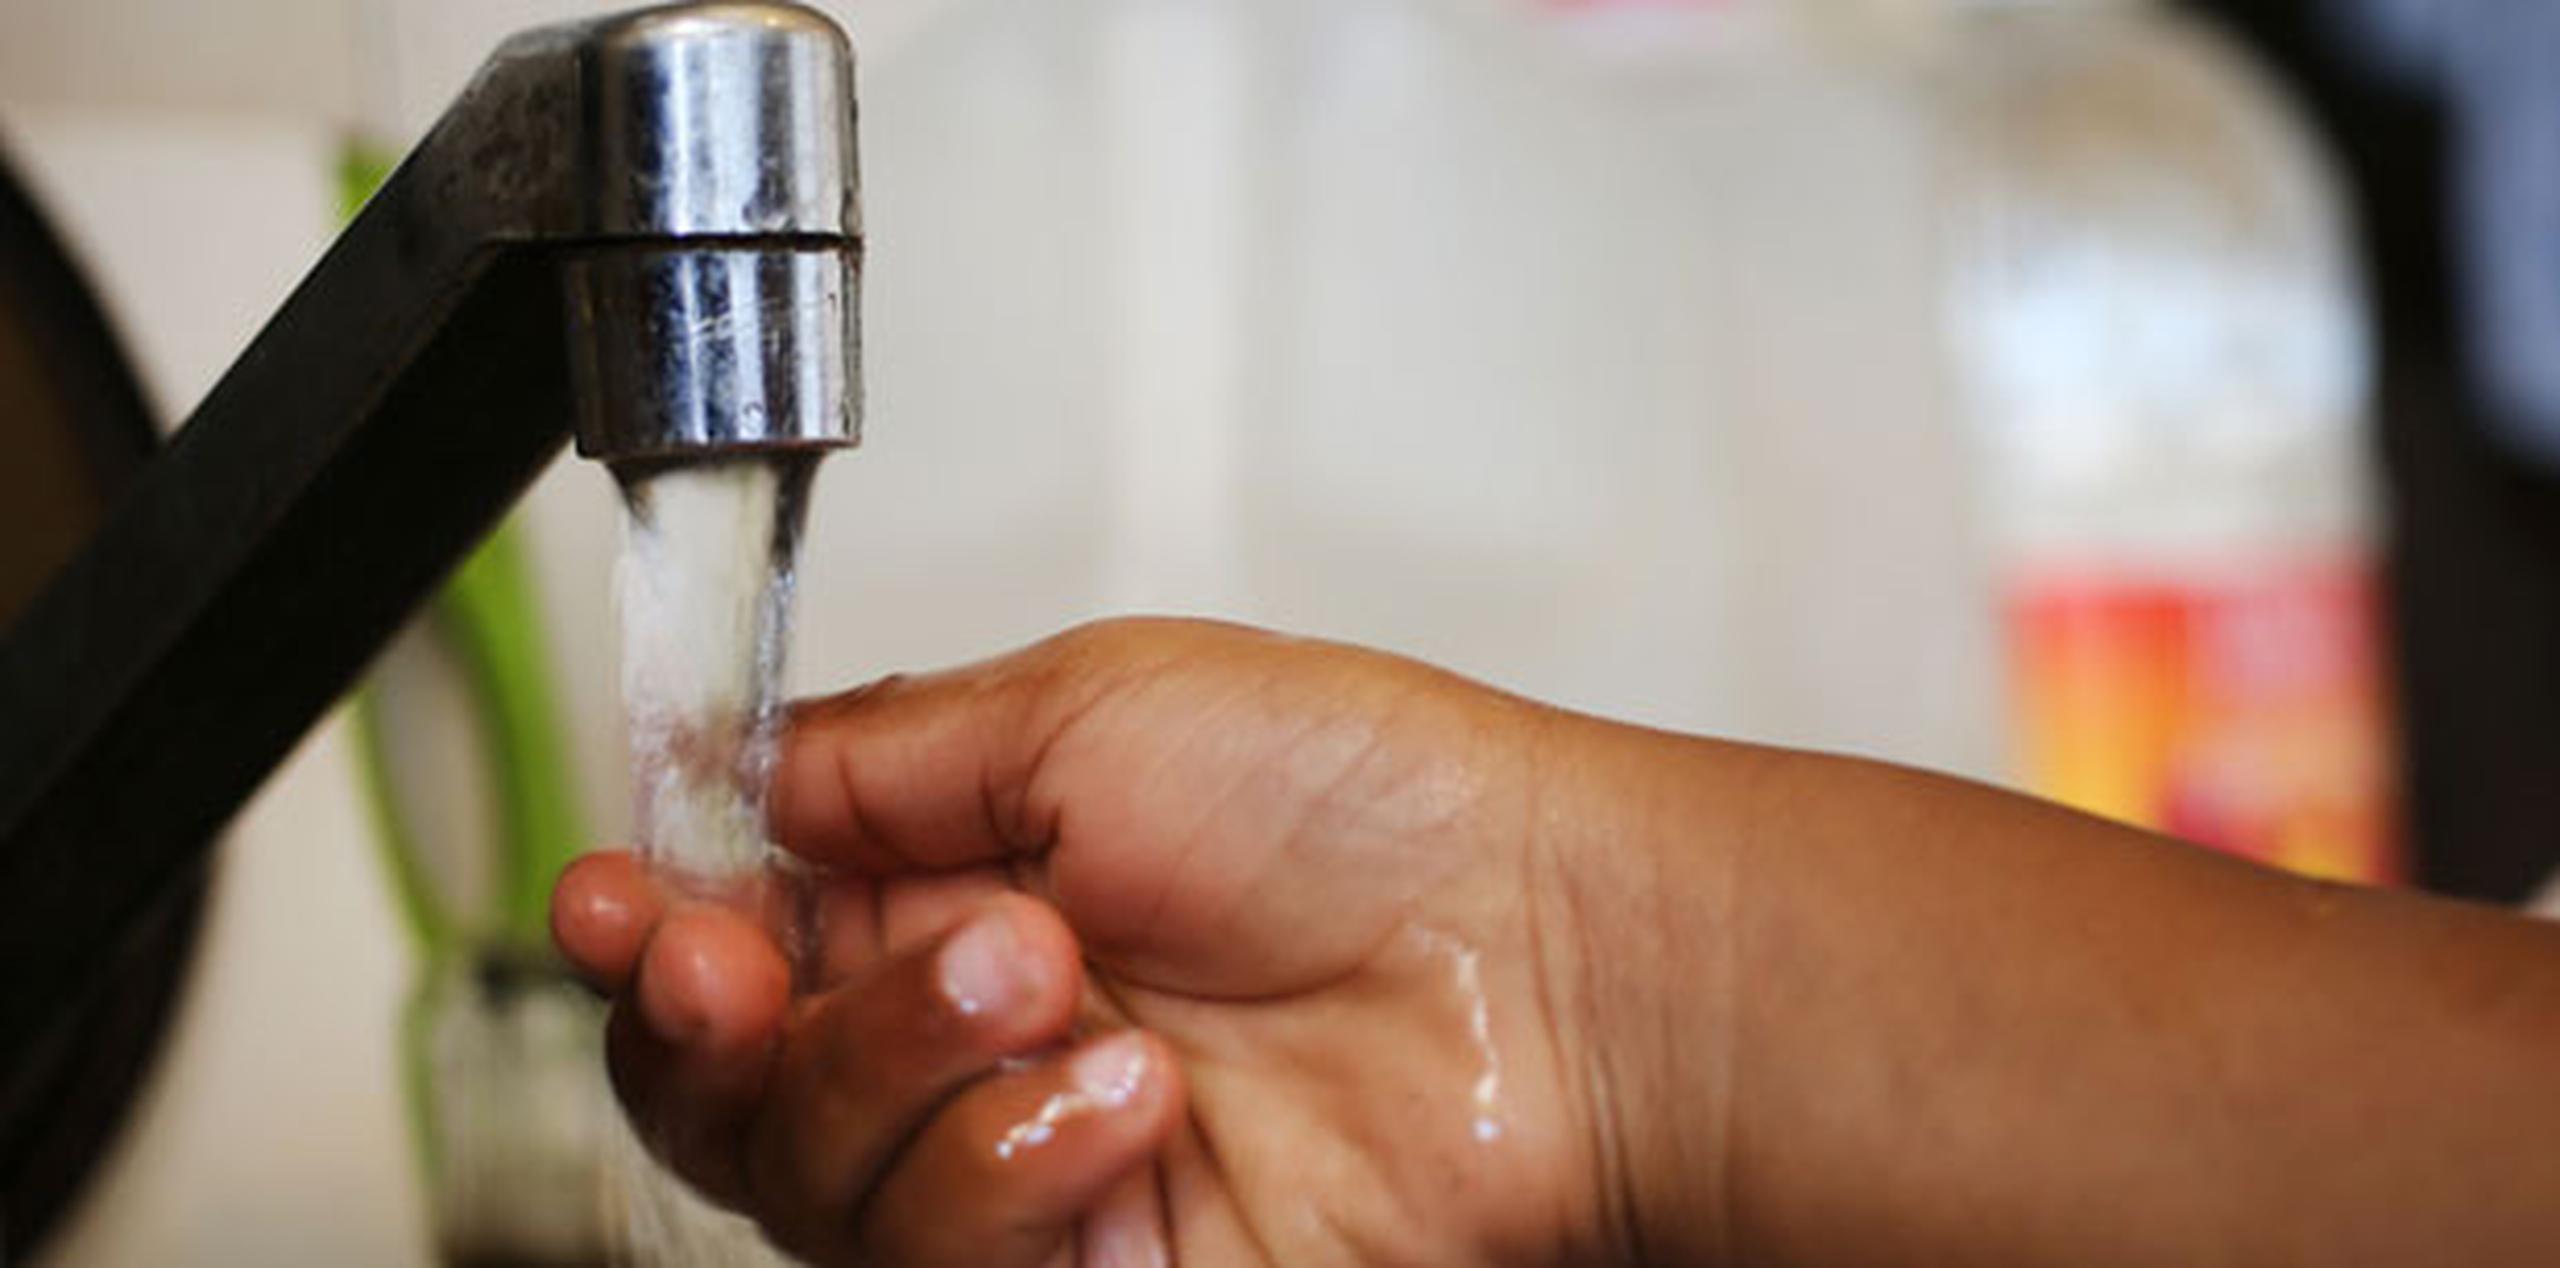 Una vez restablecido el servicio, se recomienda hervir el agua que se utilizará para el consumo humano por un periodo de cinco minutos. (Archivo)